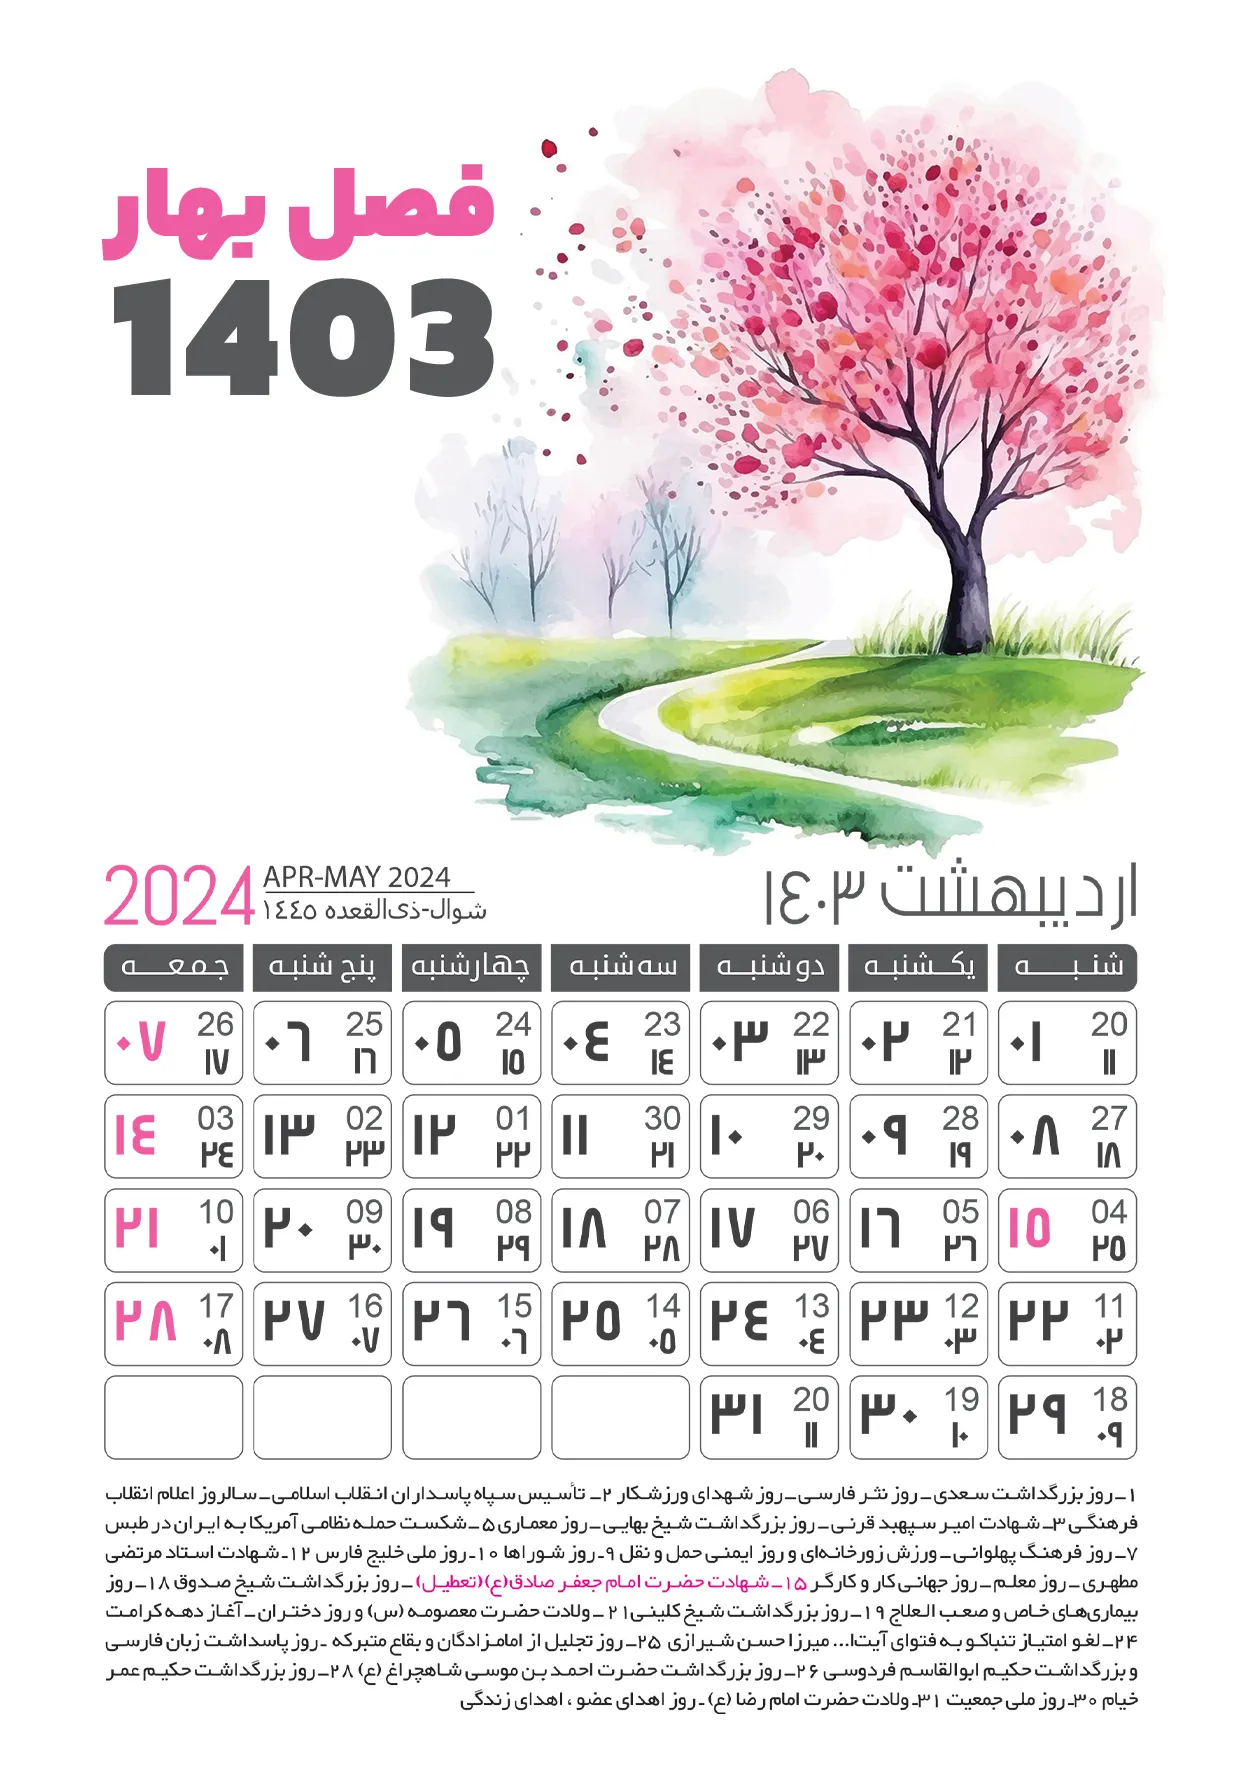 دانلود تقویم 1403 اردیبهشت ماه (فصل بهار)